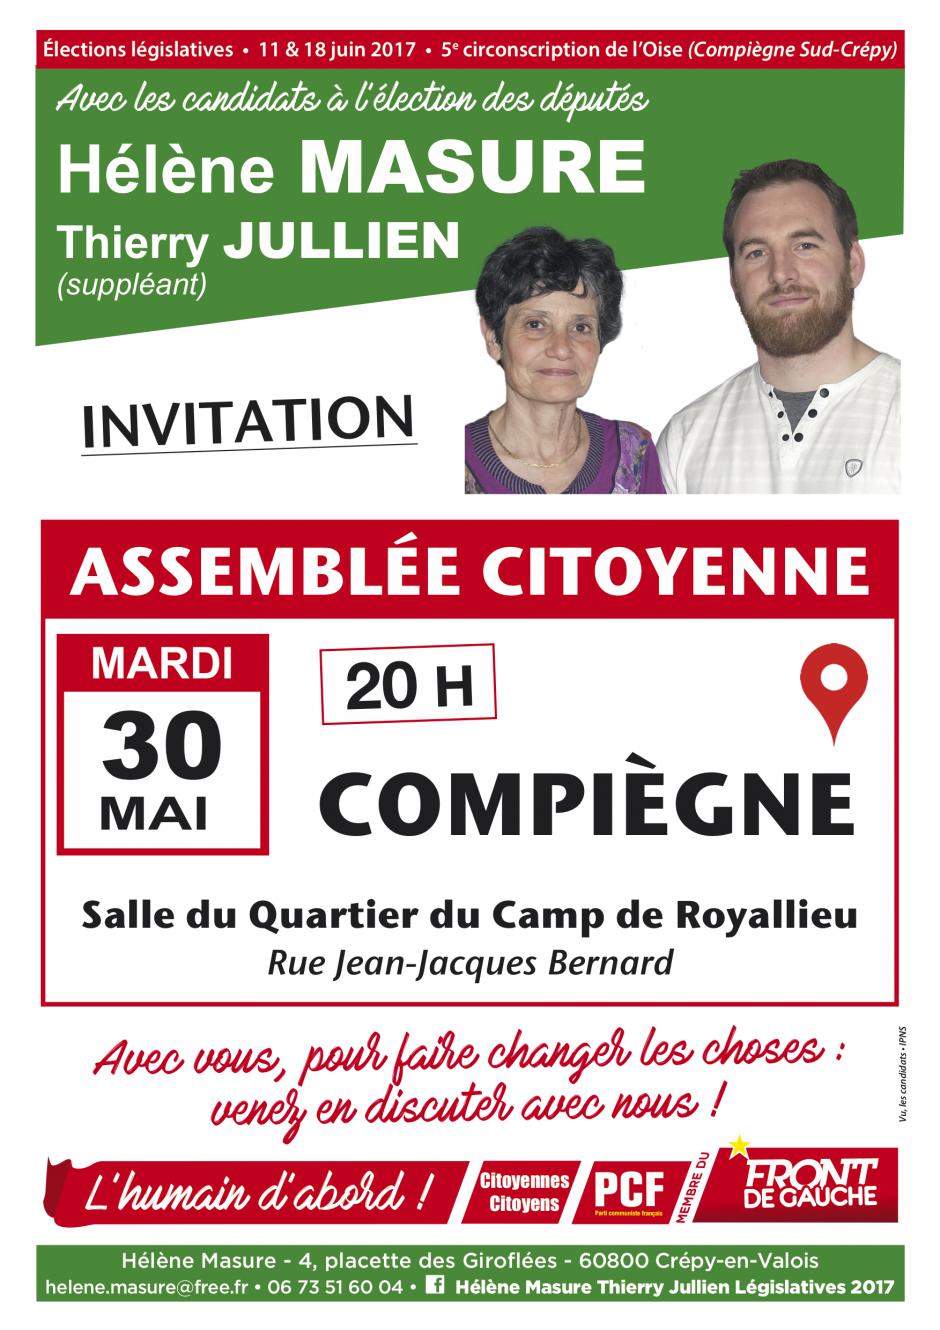 30 mai, Compiègne - Assemblée citoyenne avec Hélène Masure et Thierry Jullien